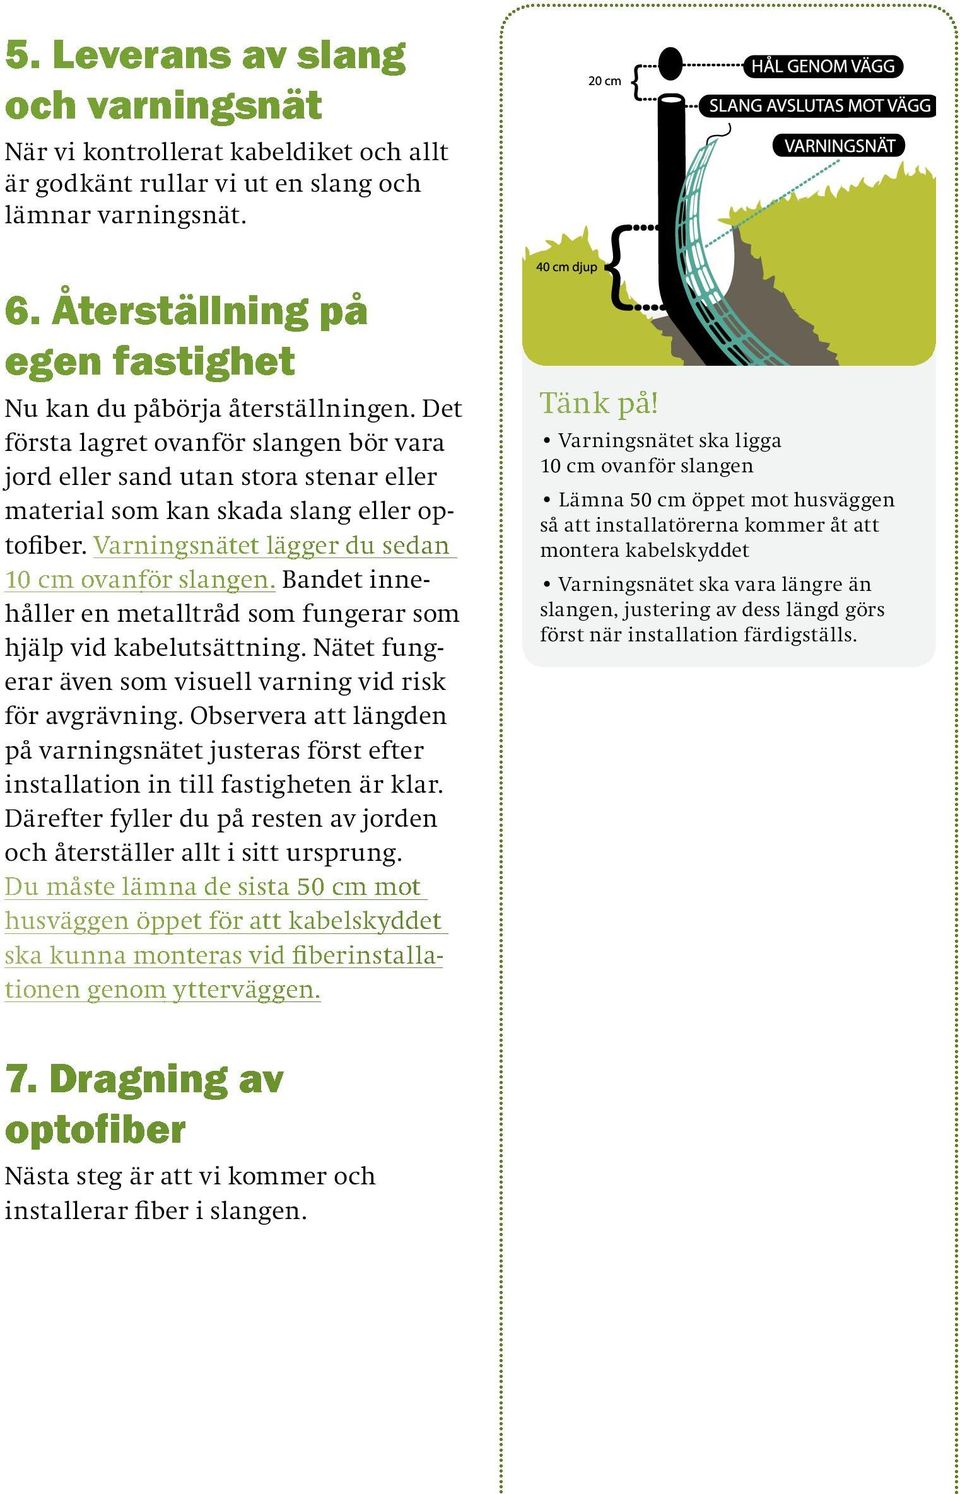 SkeKraft Bredband Så funkar det - steg för steg - PDF Free Download